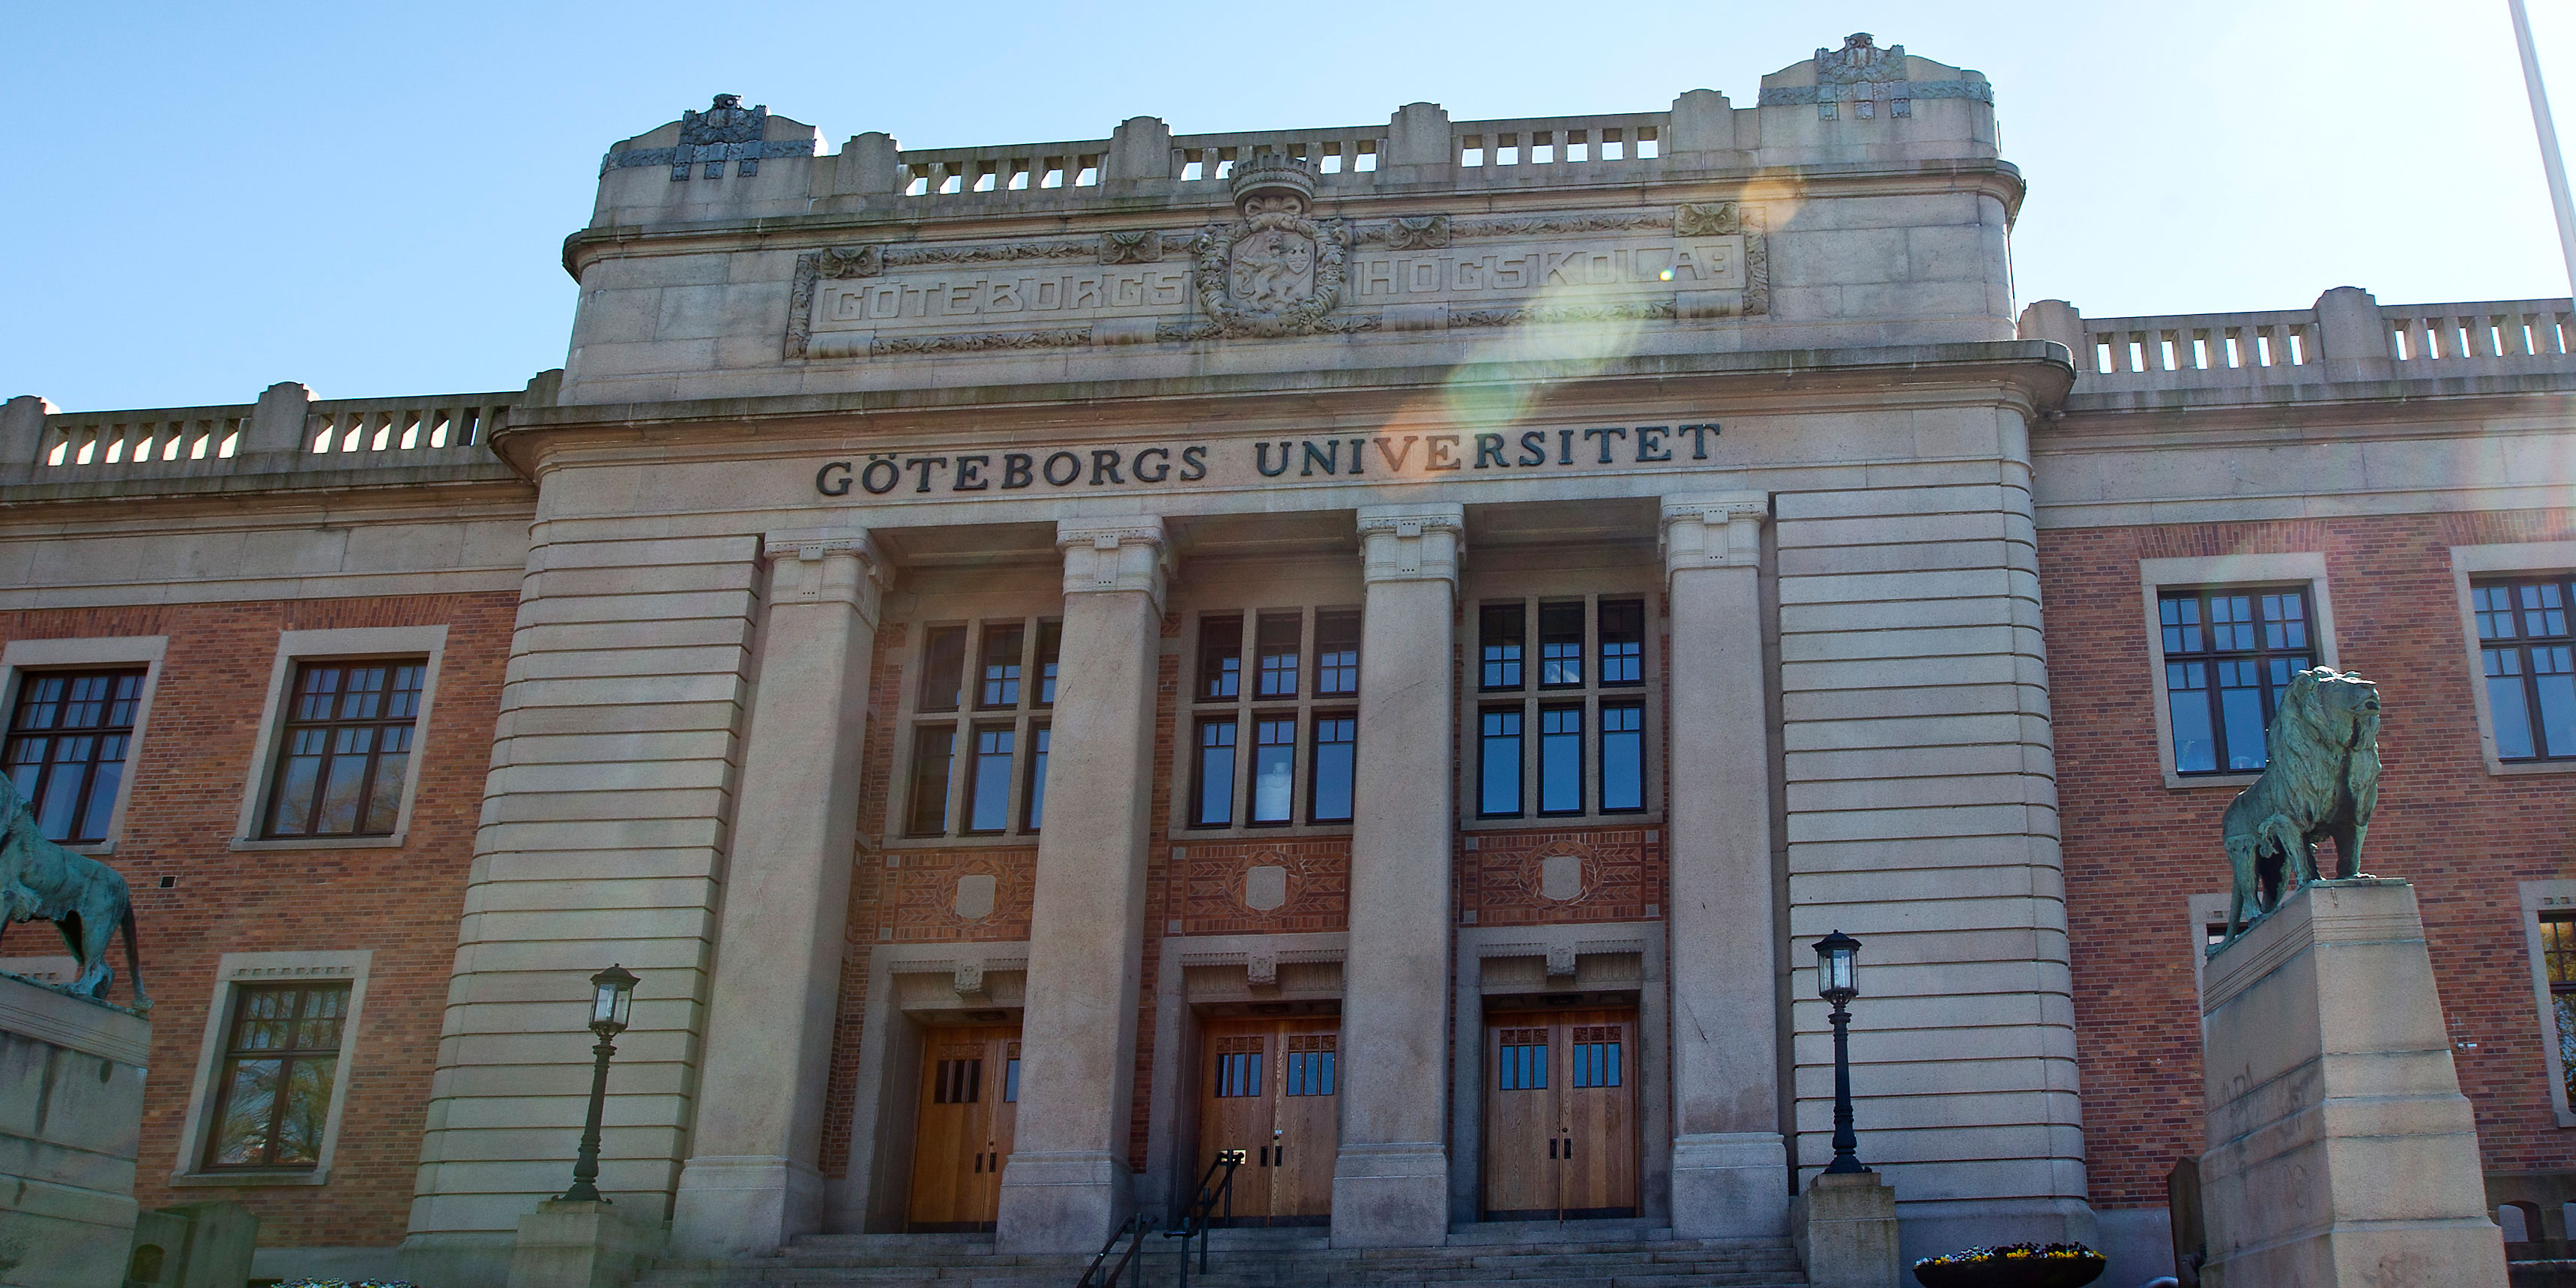 Vid Göteborgs universitet har ledningen förlängt distansarbetet till och med 31 oktober, förutsatt att inte Folkhälsomyndighetens rekommendationer förändras innan dess.